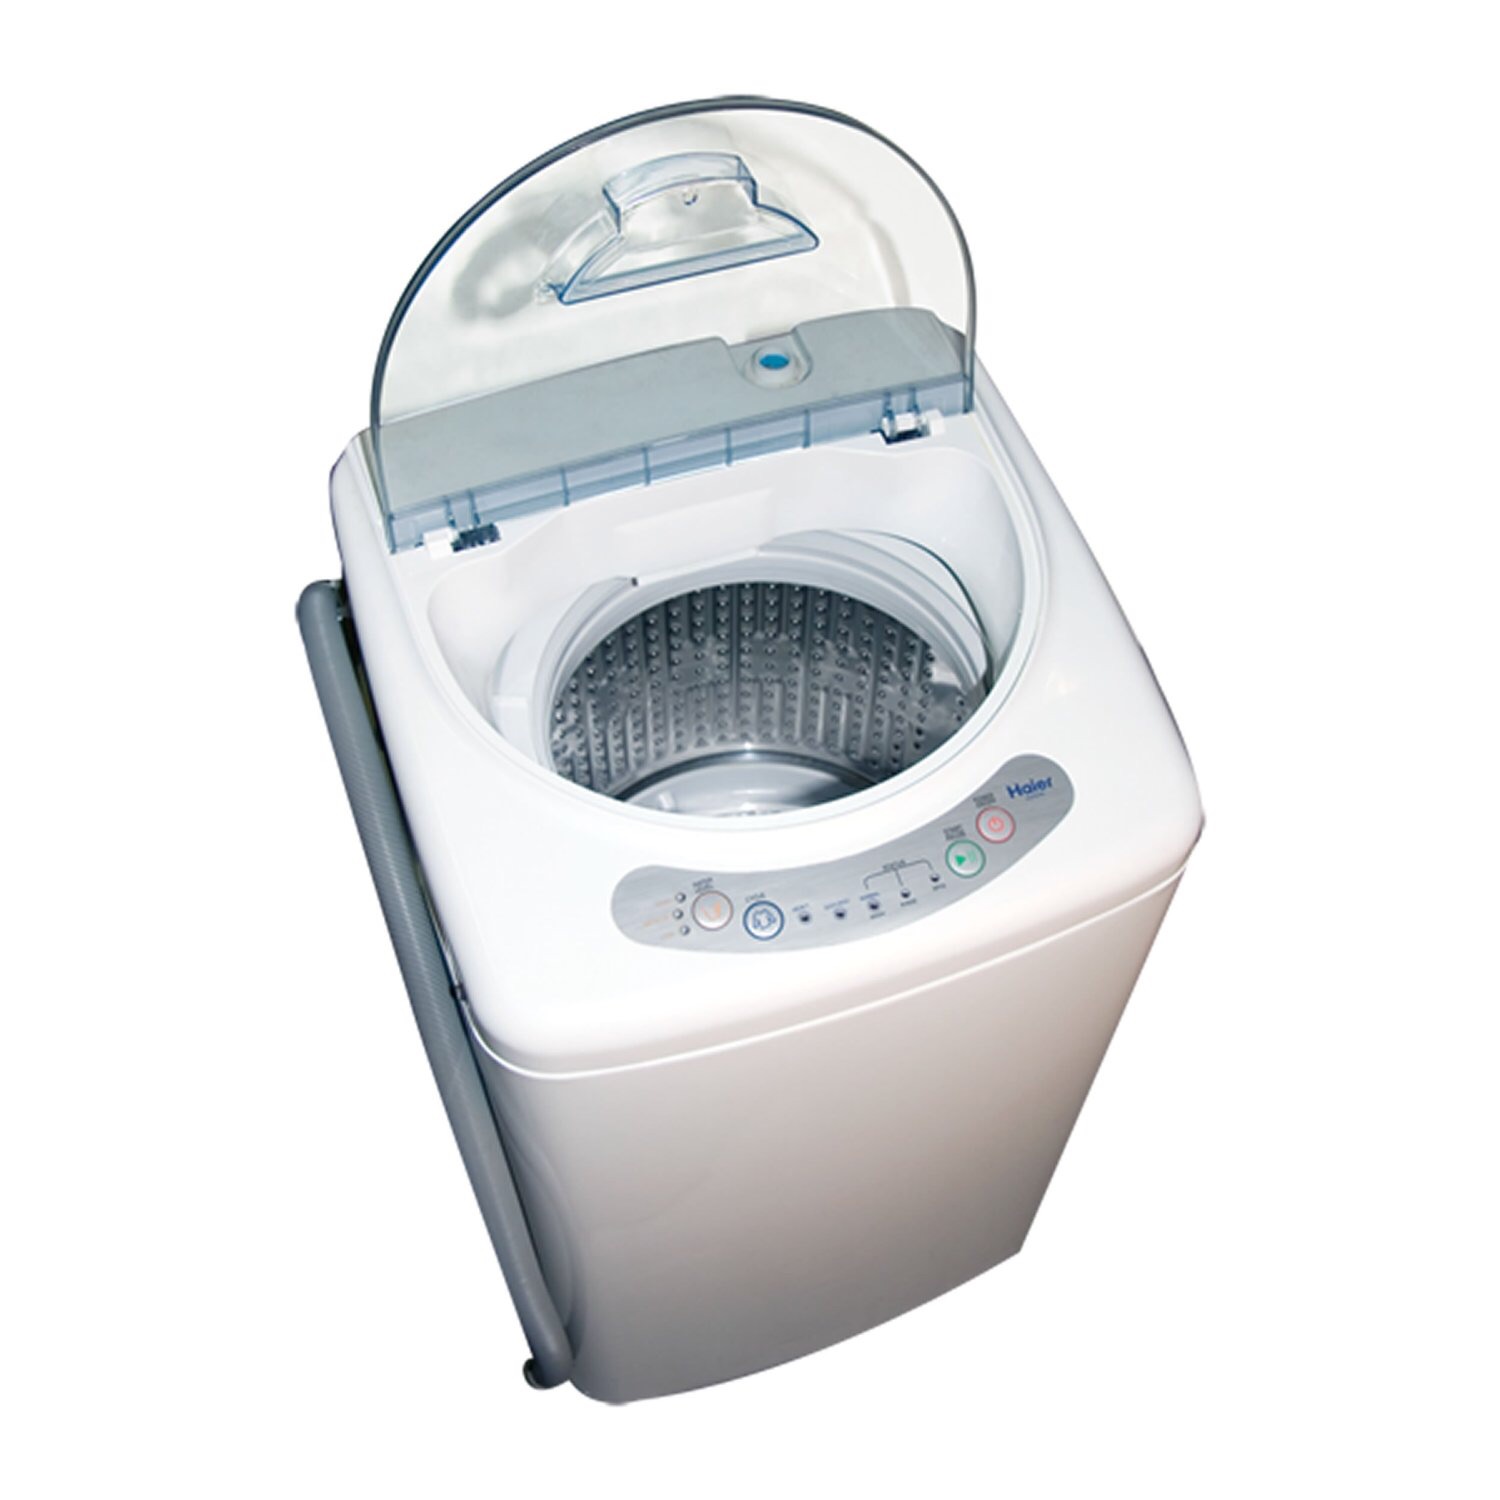 Panda Portable Washing Machine 10 LBS Capacity Compact, Fully